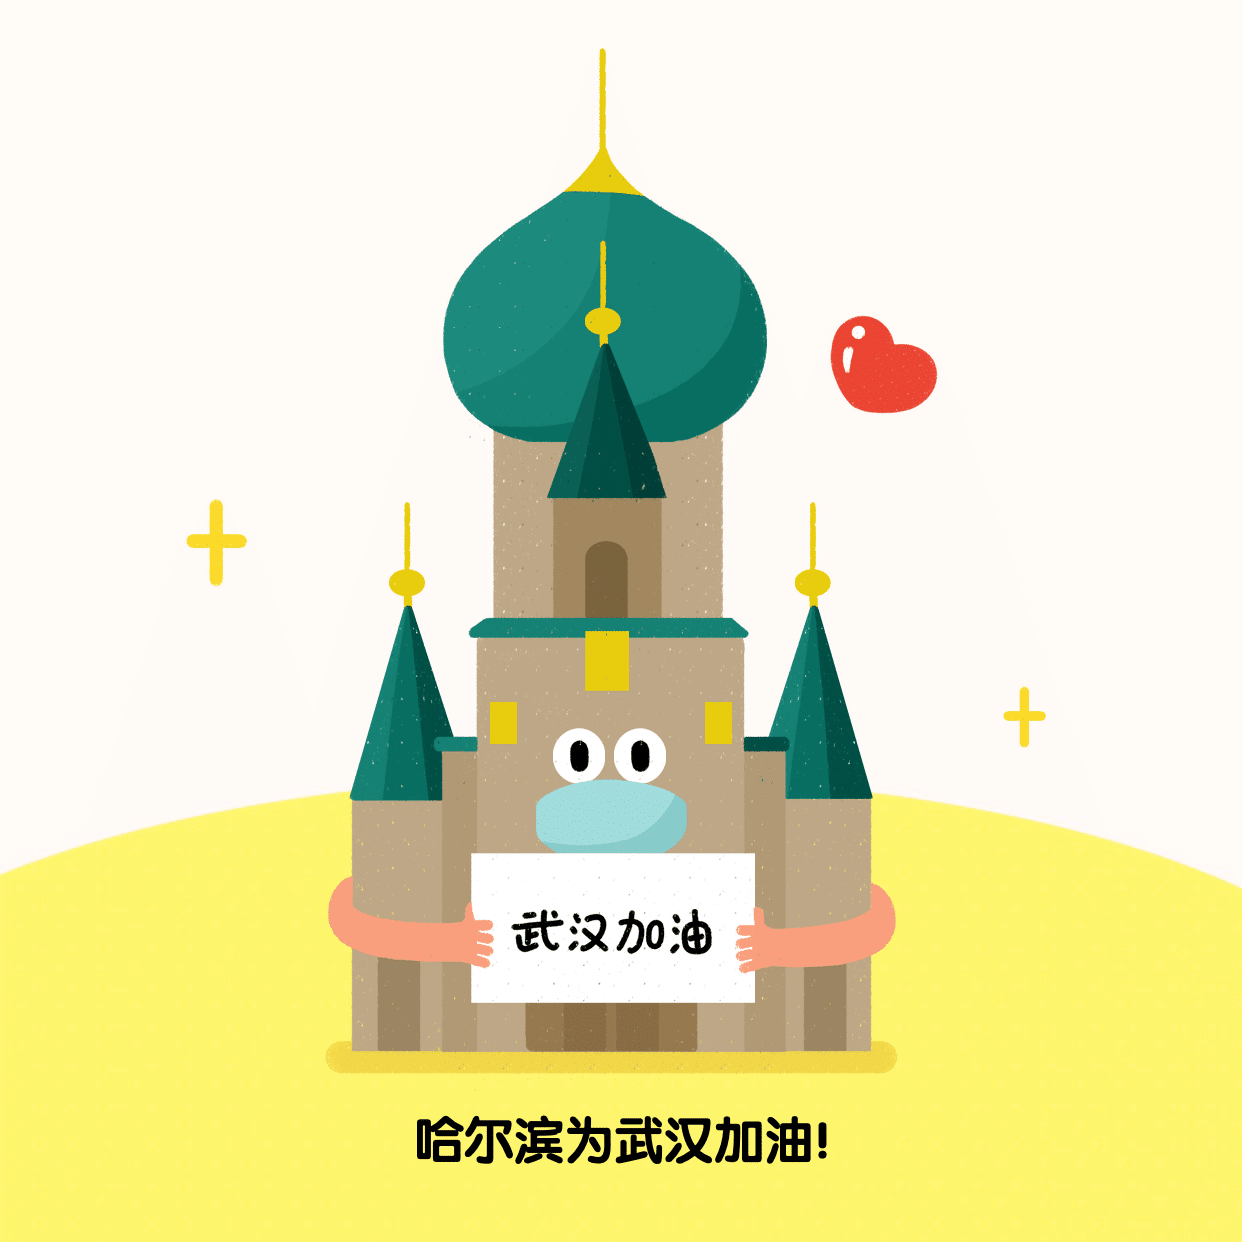 哈尔滨为武汉加油肺炎疫情方形海报